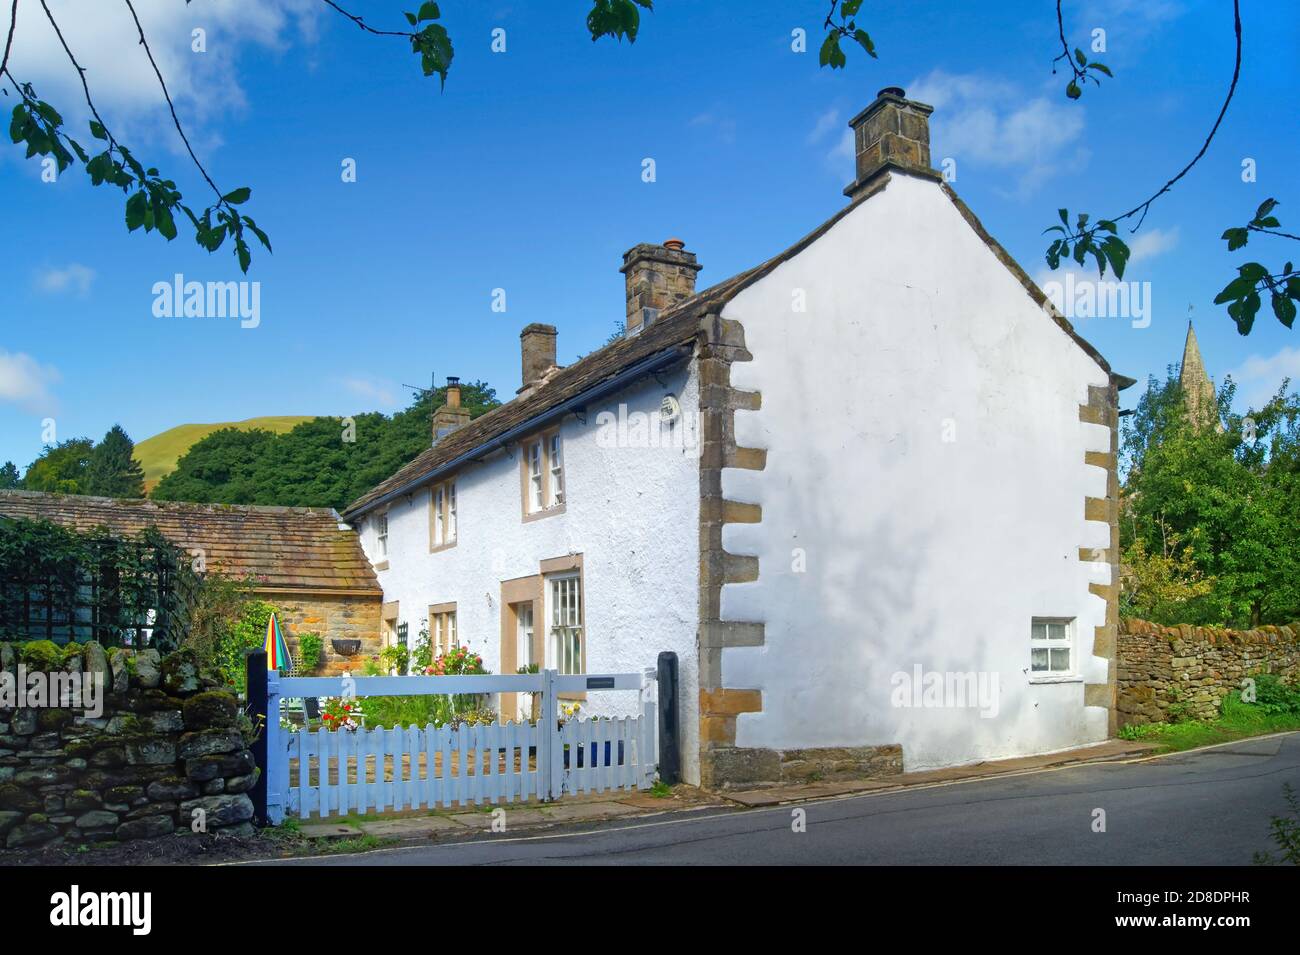 Royaume-Uni, Derbyshire, Peak District, Edale, Church Cottage sur Mary's Lane. Banque D'Images